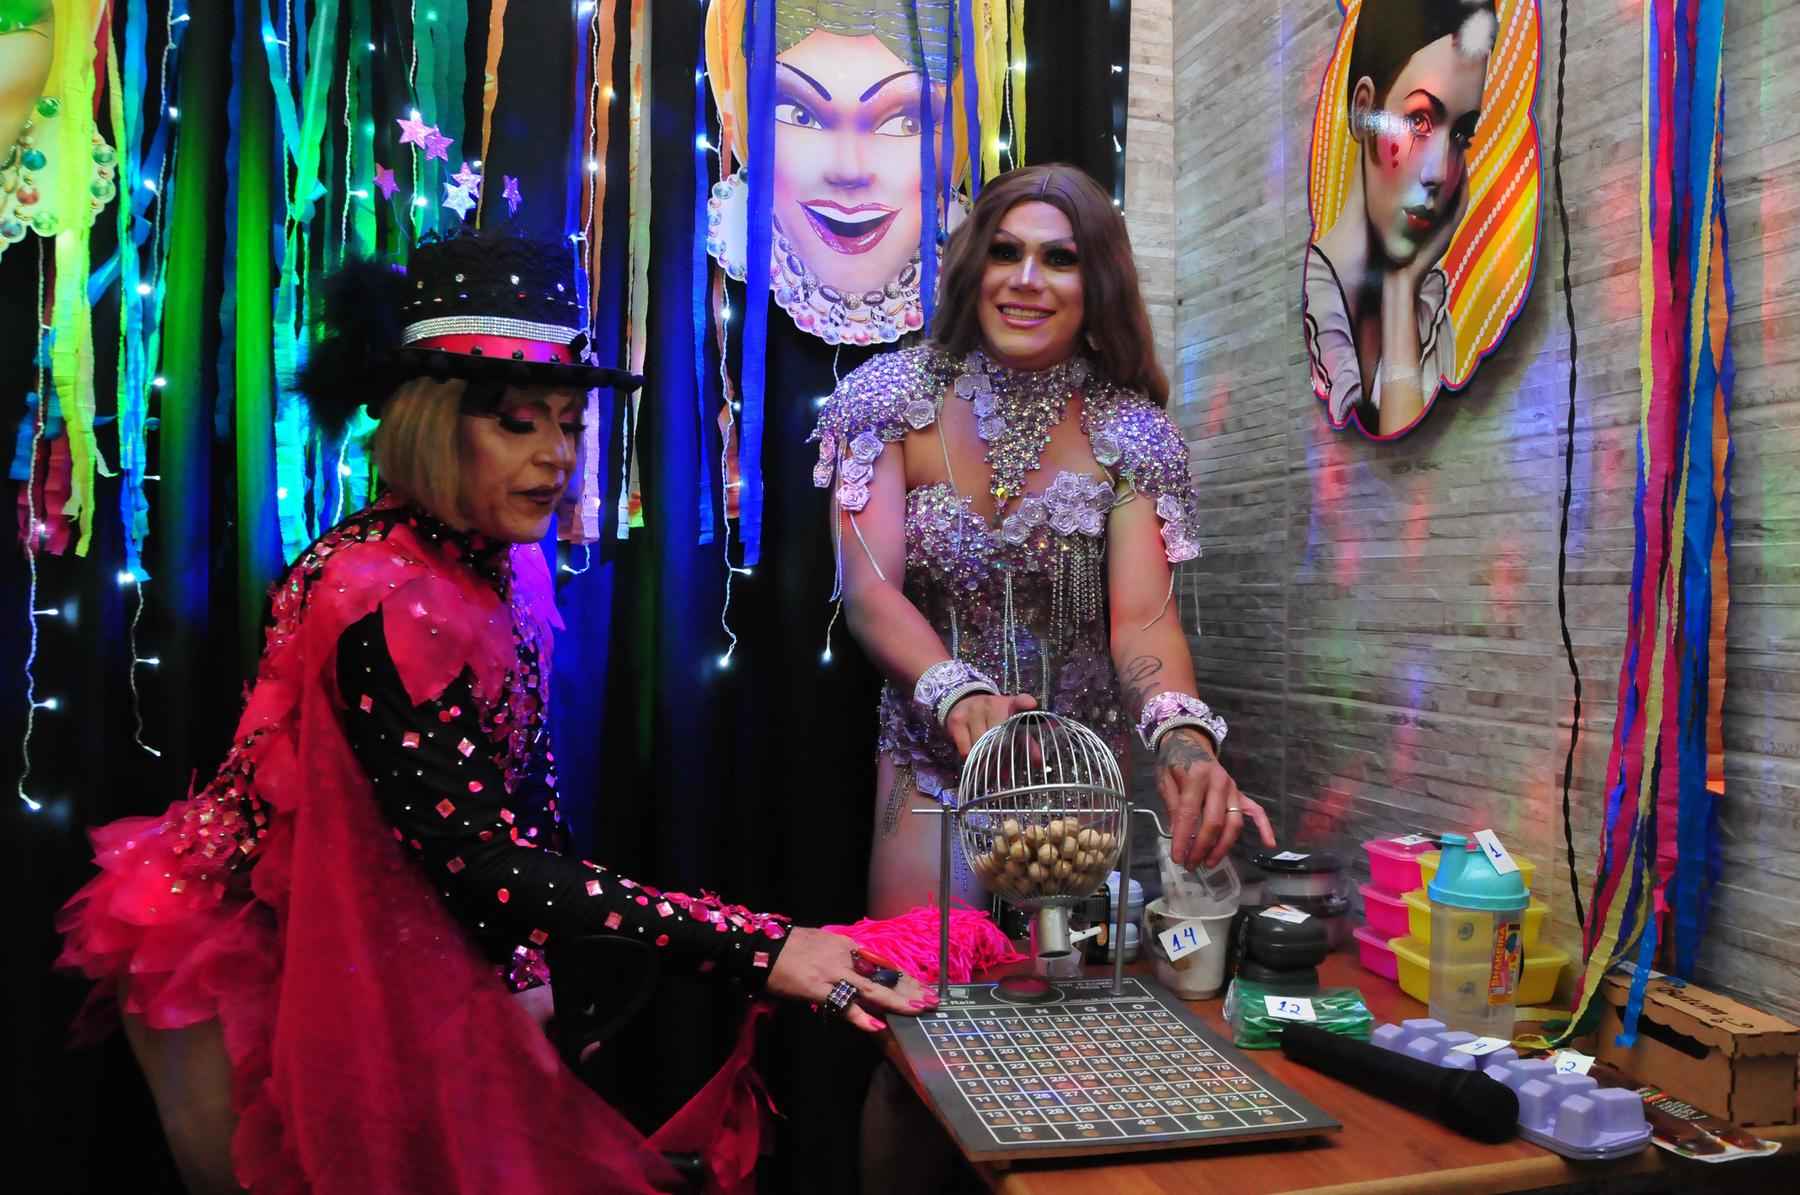 Old Bar faz sucesso com bingo e shows de drag queen no Santa Tereza - Marcos Vieira/EM/D.A Press